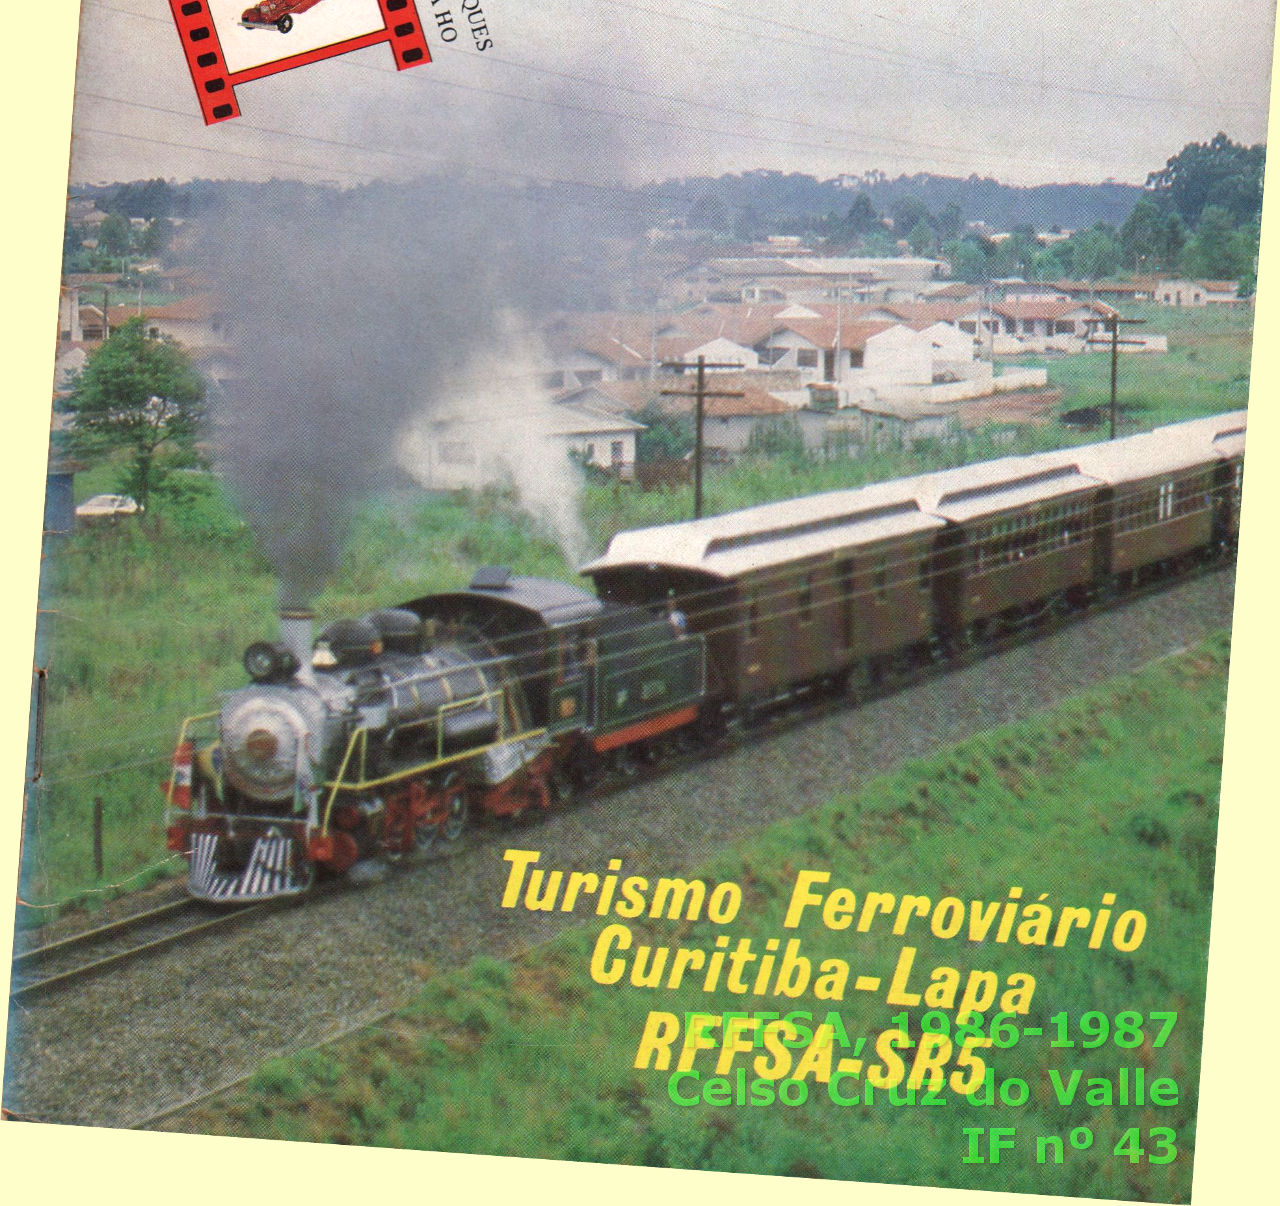 Trem turístico Curitiba - Lapa, em foto de 1986-1987, na capa do Informativo Frateschi nº 43